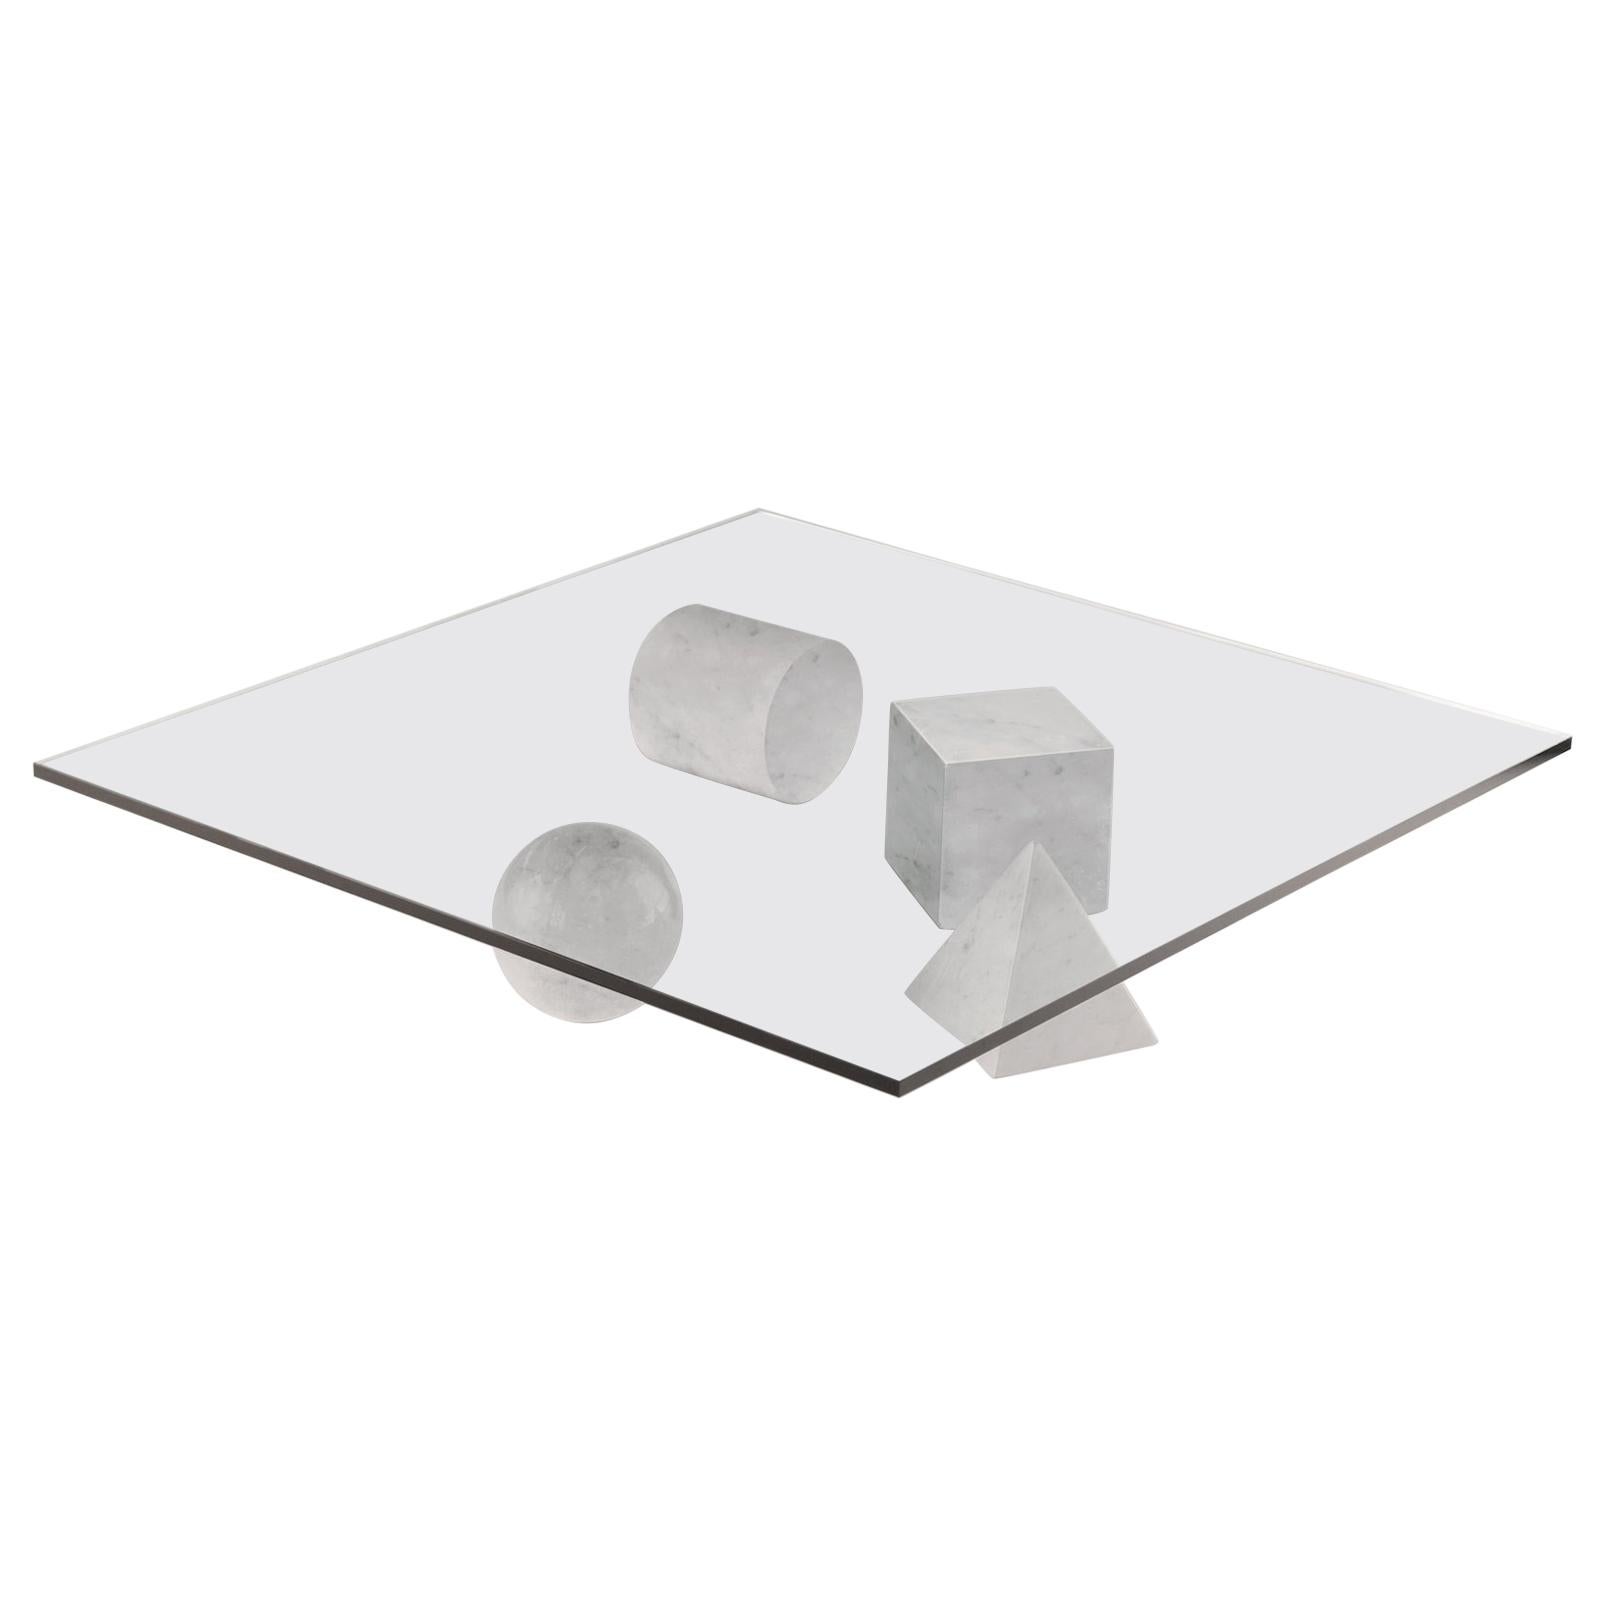 Im Angebot: Martinelli Luce Metafora 1979 Tisch von Lella und Massimo Vignelli, White (Carrara White)